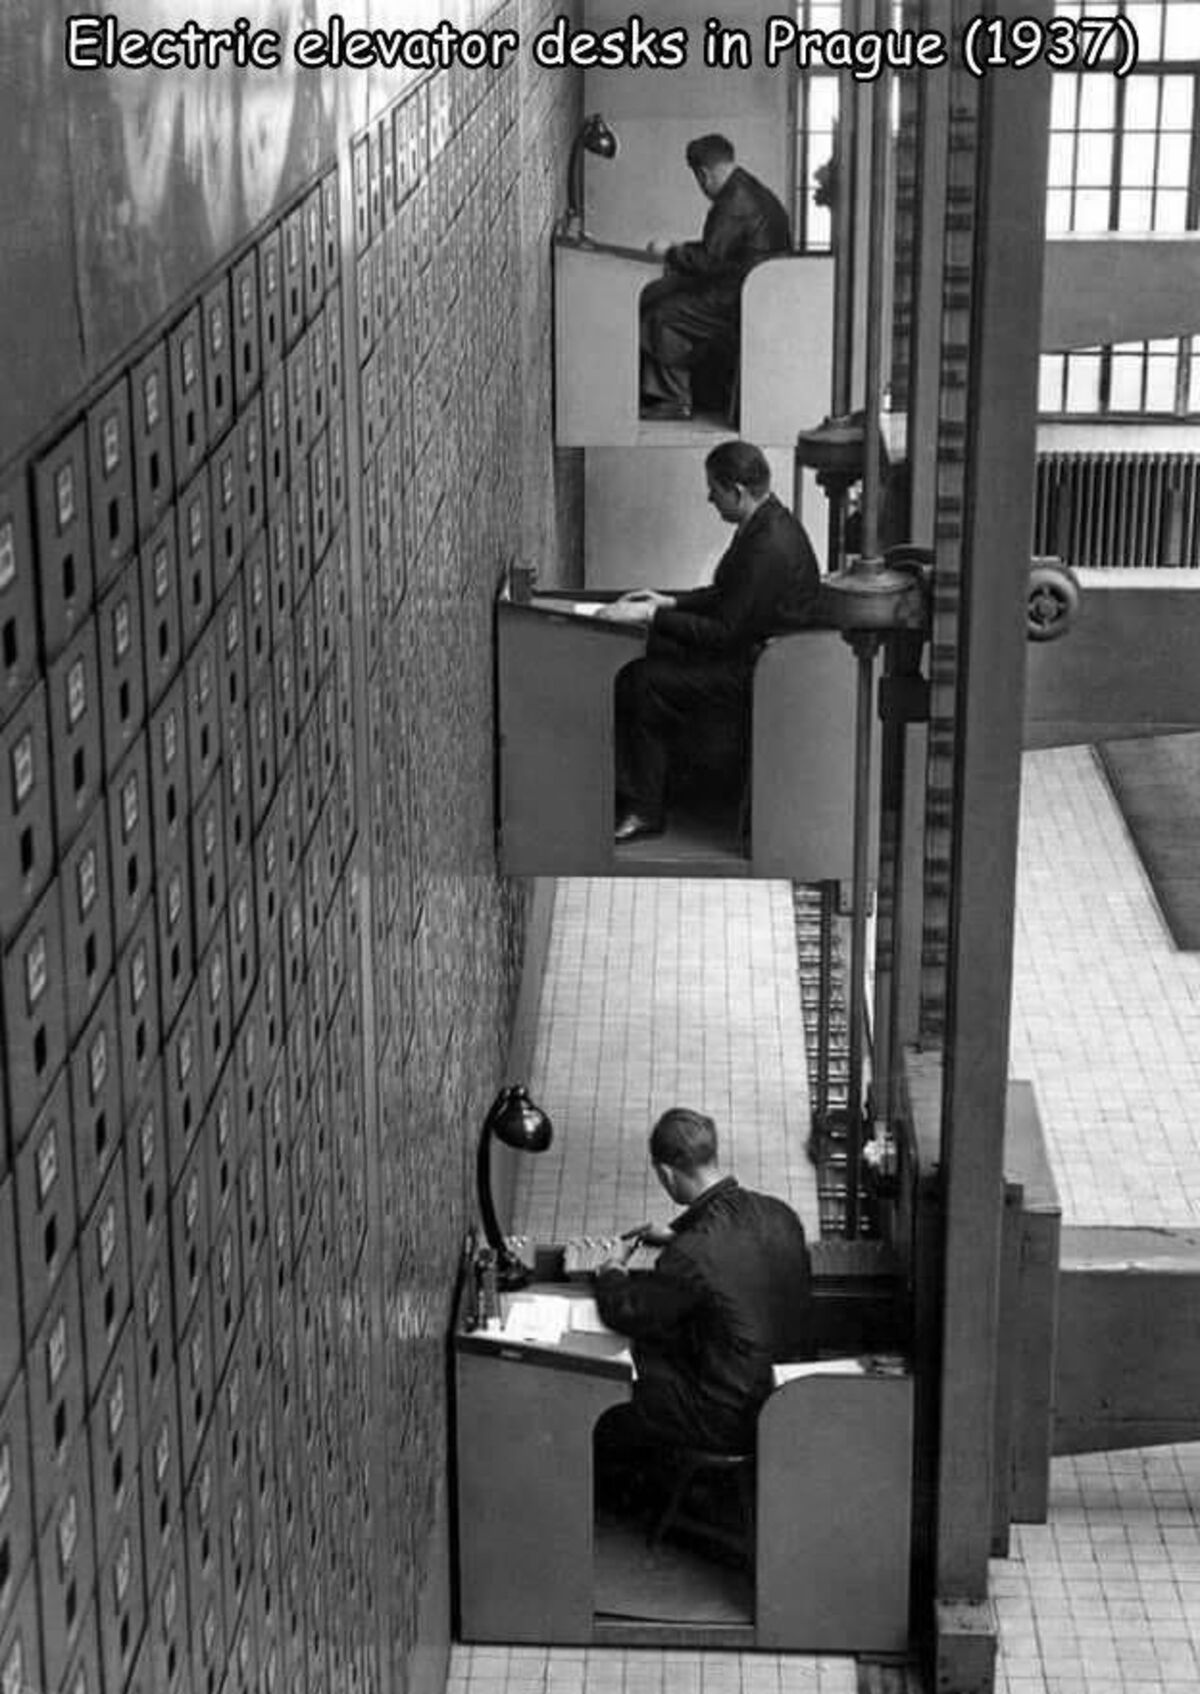 central social institution in prague - Electric elevator desks in Prague 1937